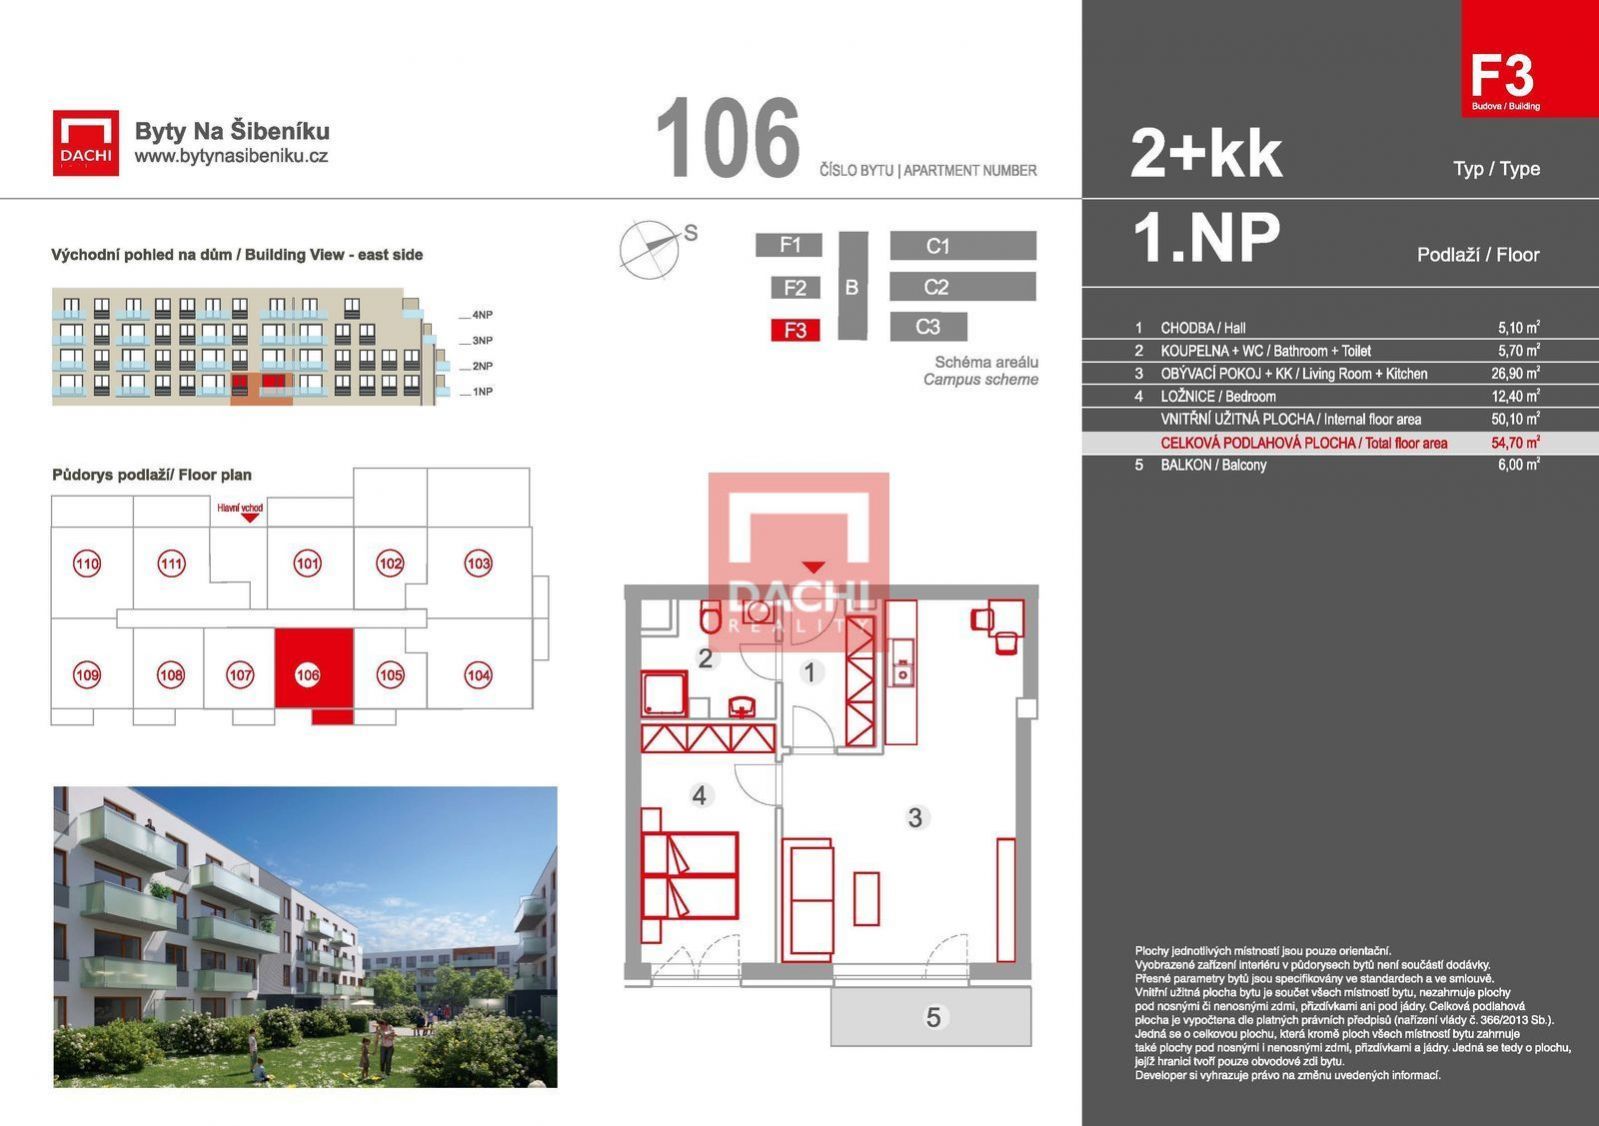 Prodej novostavby bytu F3.106  2+kk 54,7m s balkonem 6m, Olomouc, Byty Na Šibeníku II. etapa, obrázek č. 3